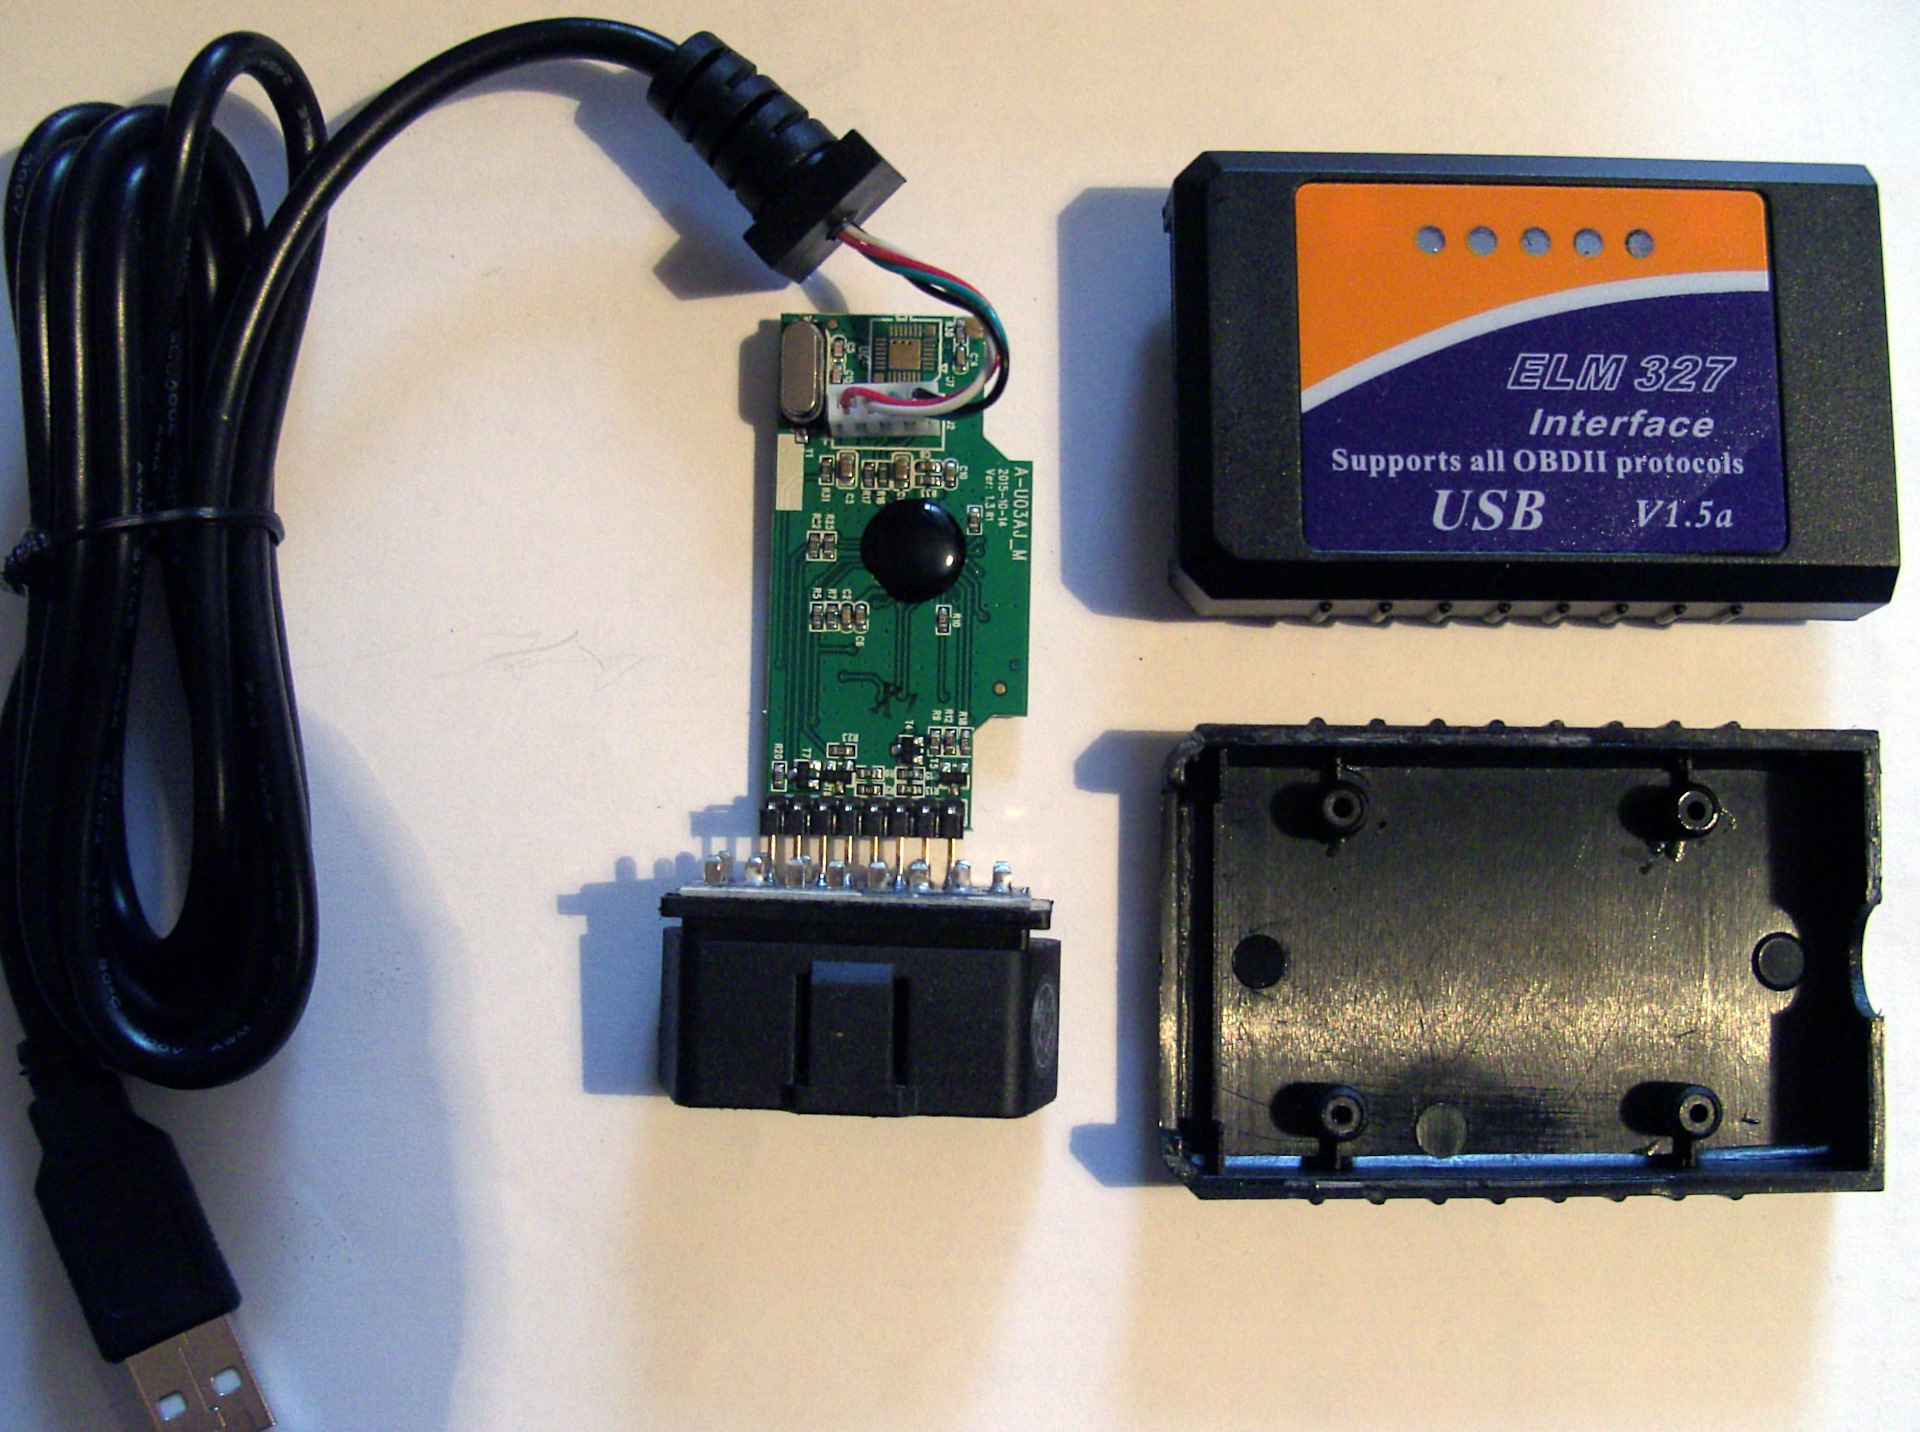 Автосканер v 1.5. Bluetooth автосканер elm327. Адаптер диагностический elm327 USB. Адаптер elm327 USB V1.5. Автосканер elm327 v1.5.